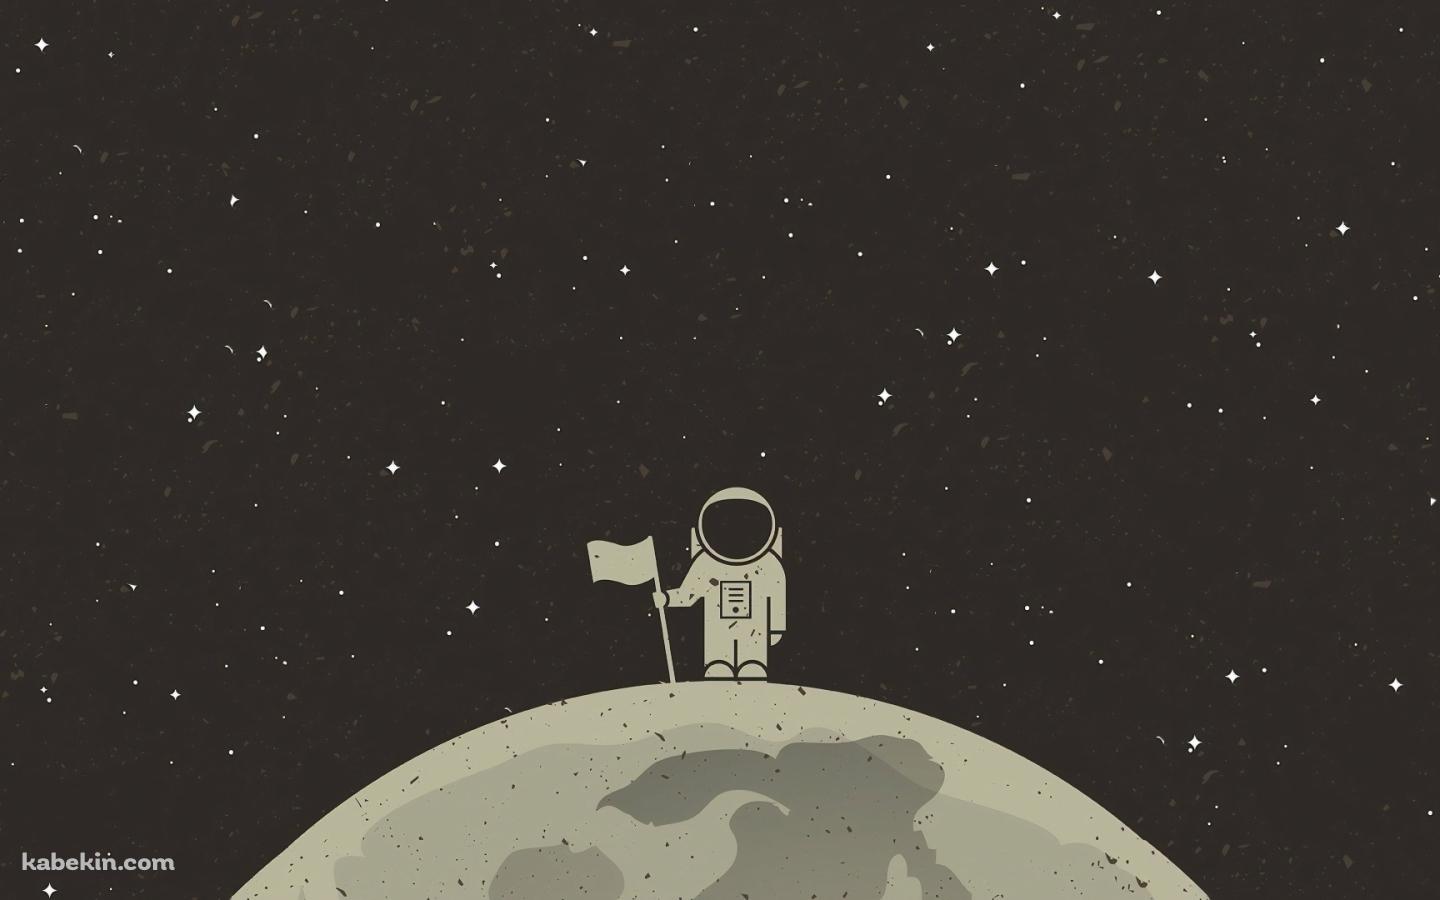 月面着陸 旗を立てる宇宙飛行士の壁紙(1440px x 900px) 高画質 PC・デスクトップ用